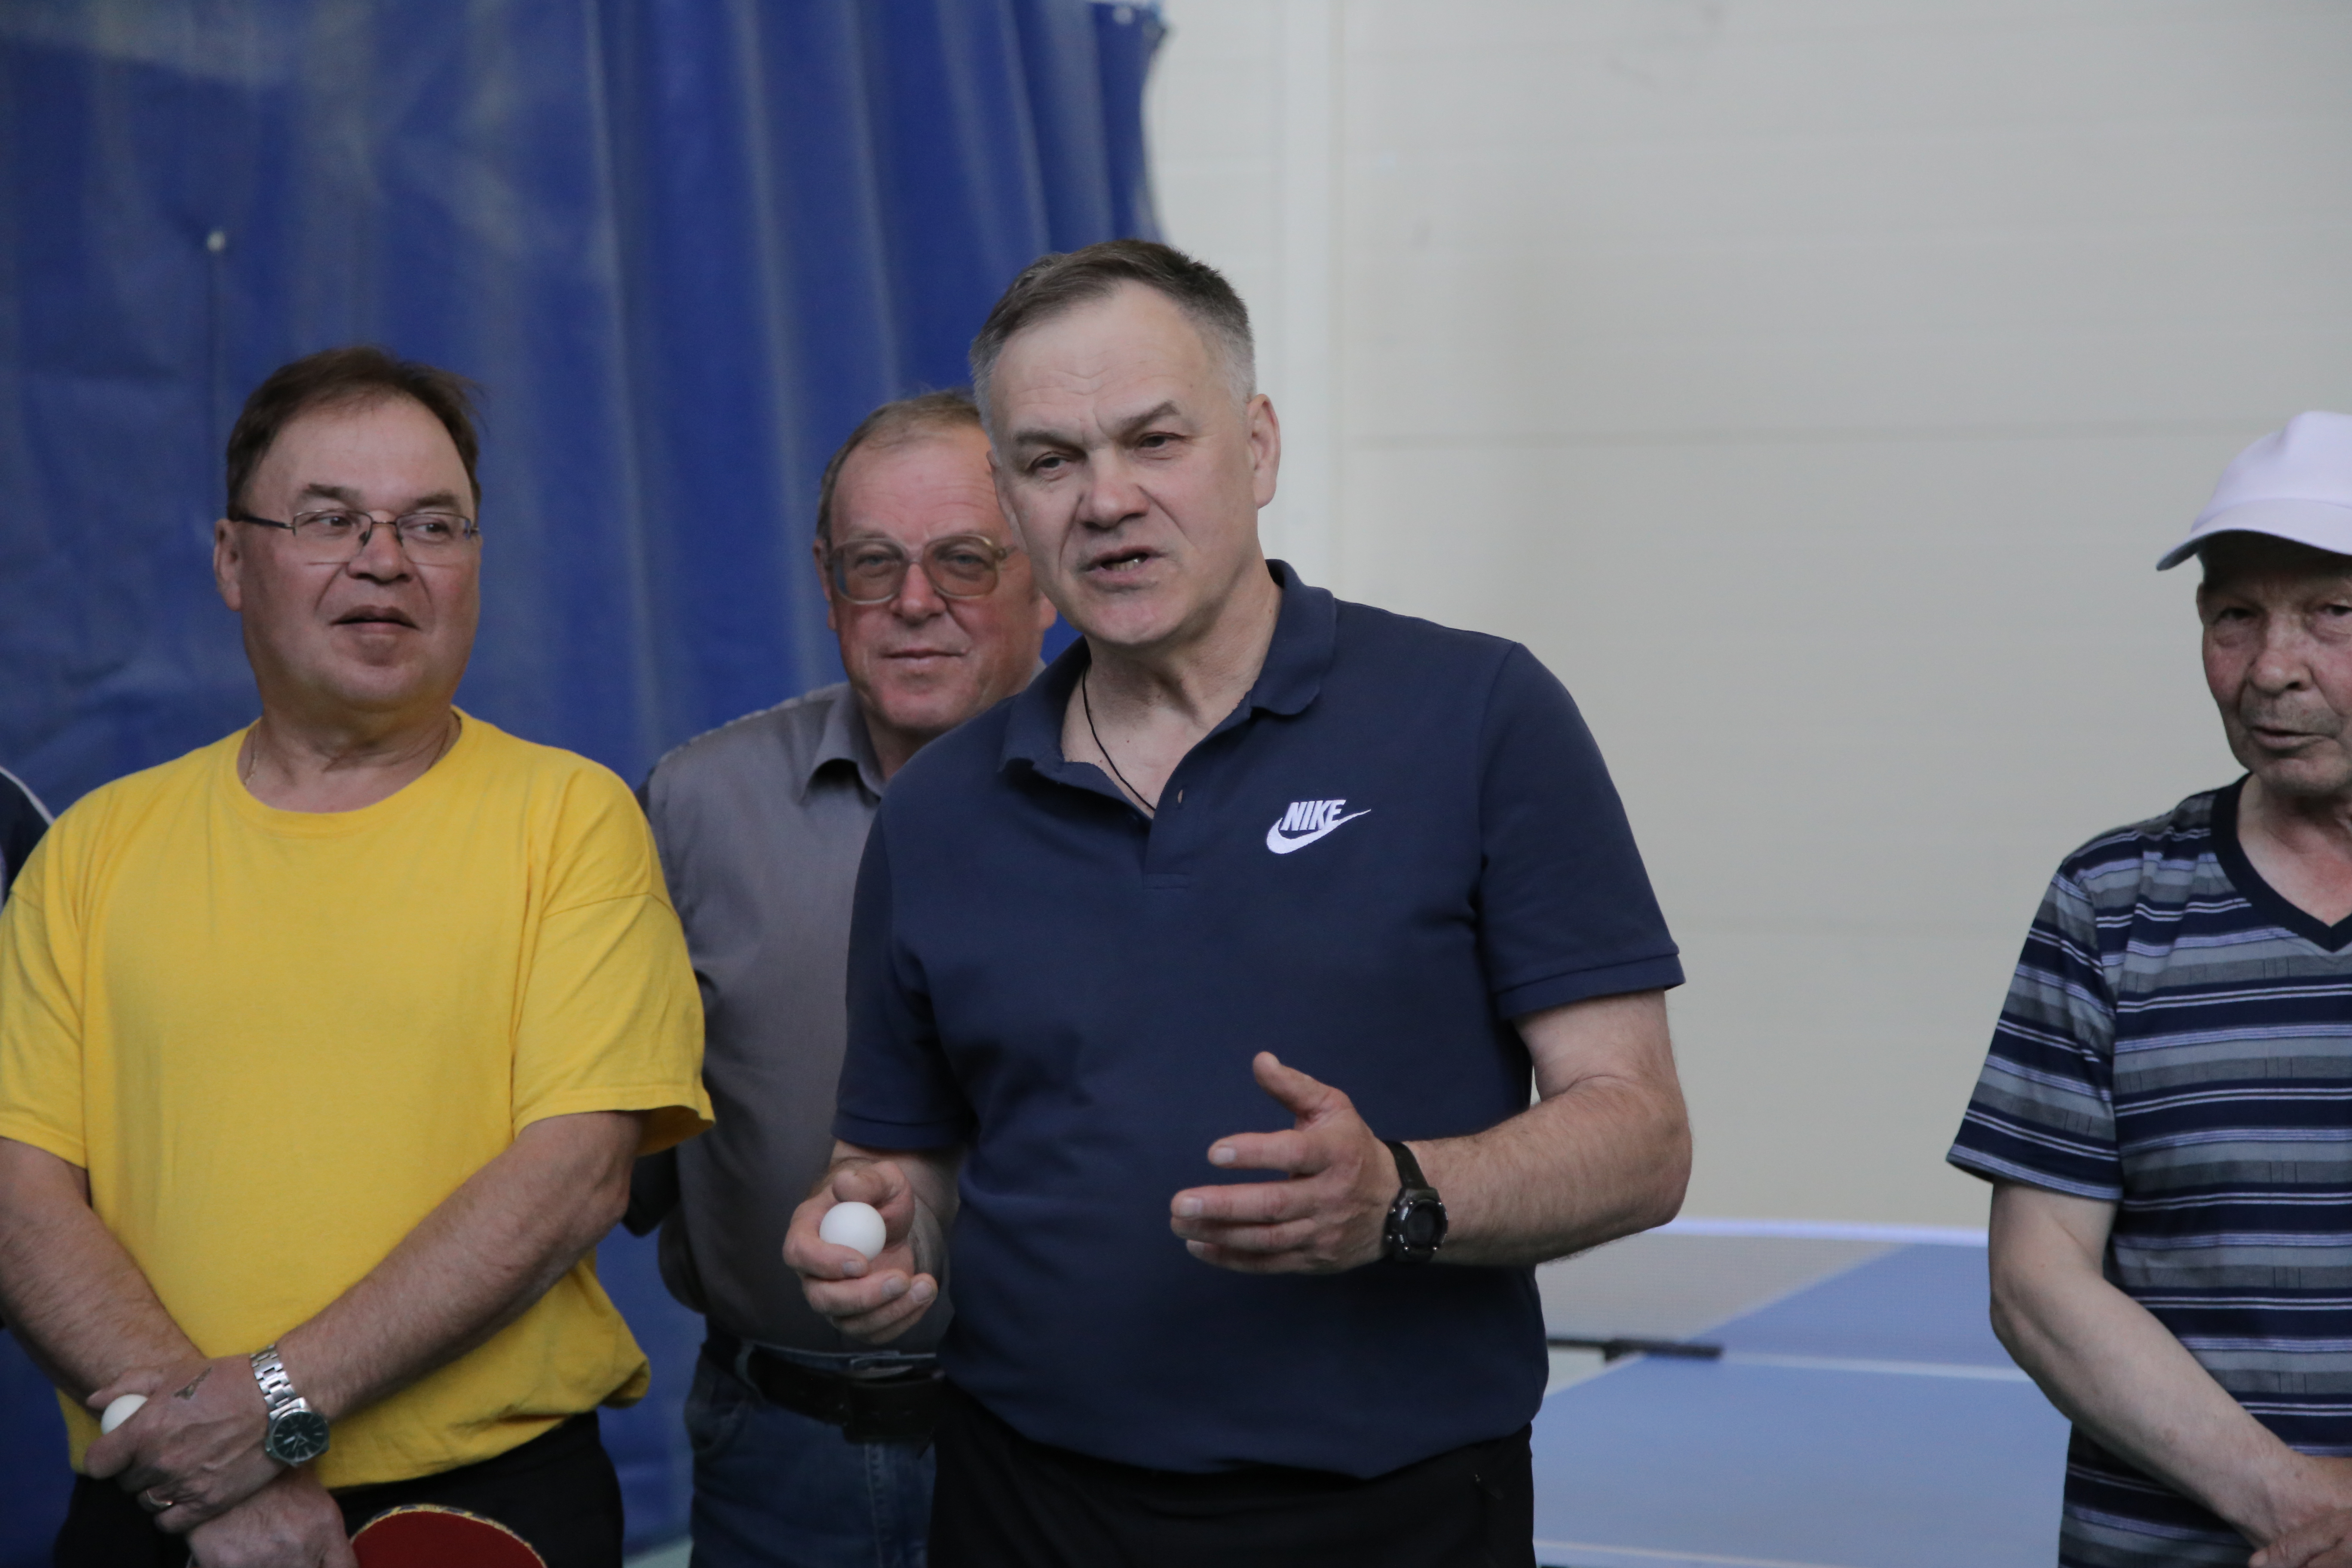 Бирские пенсионеры посетили турнир по настольному теннису